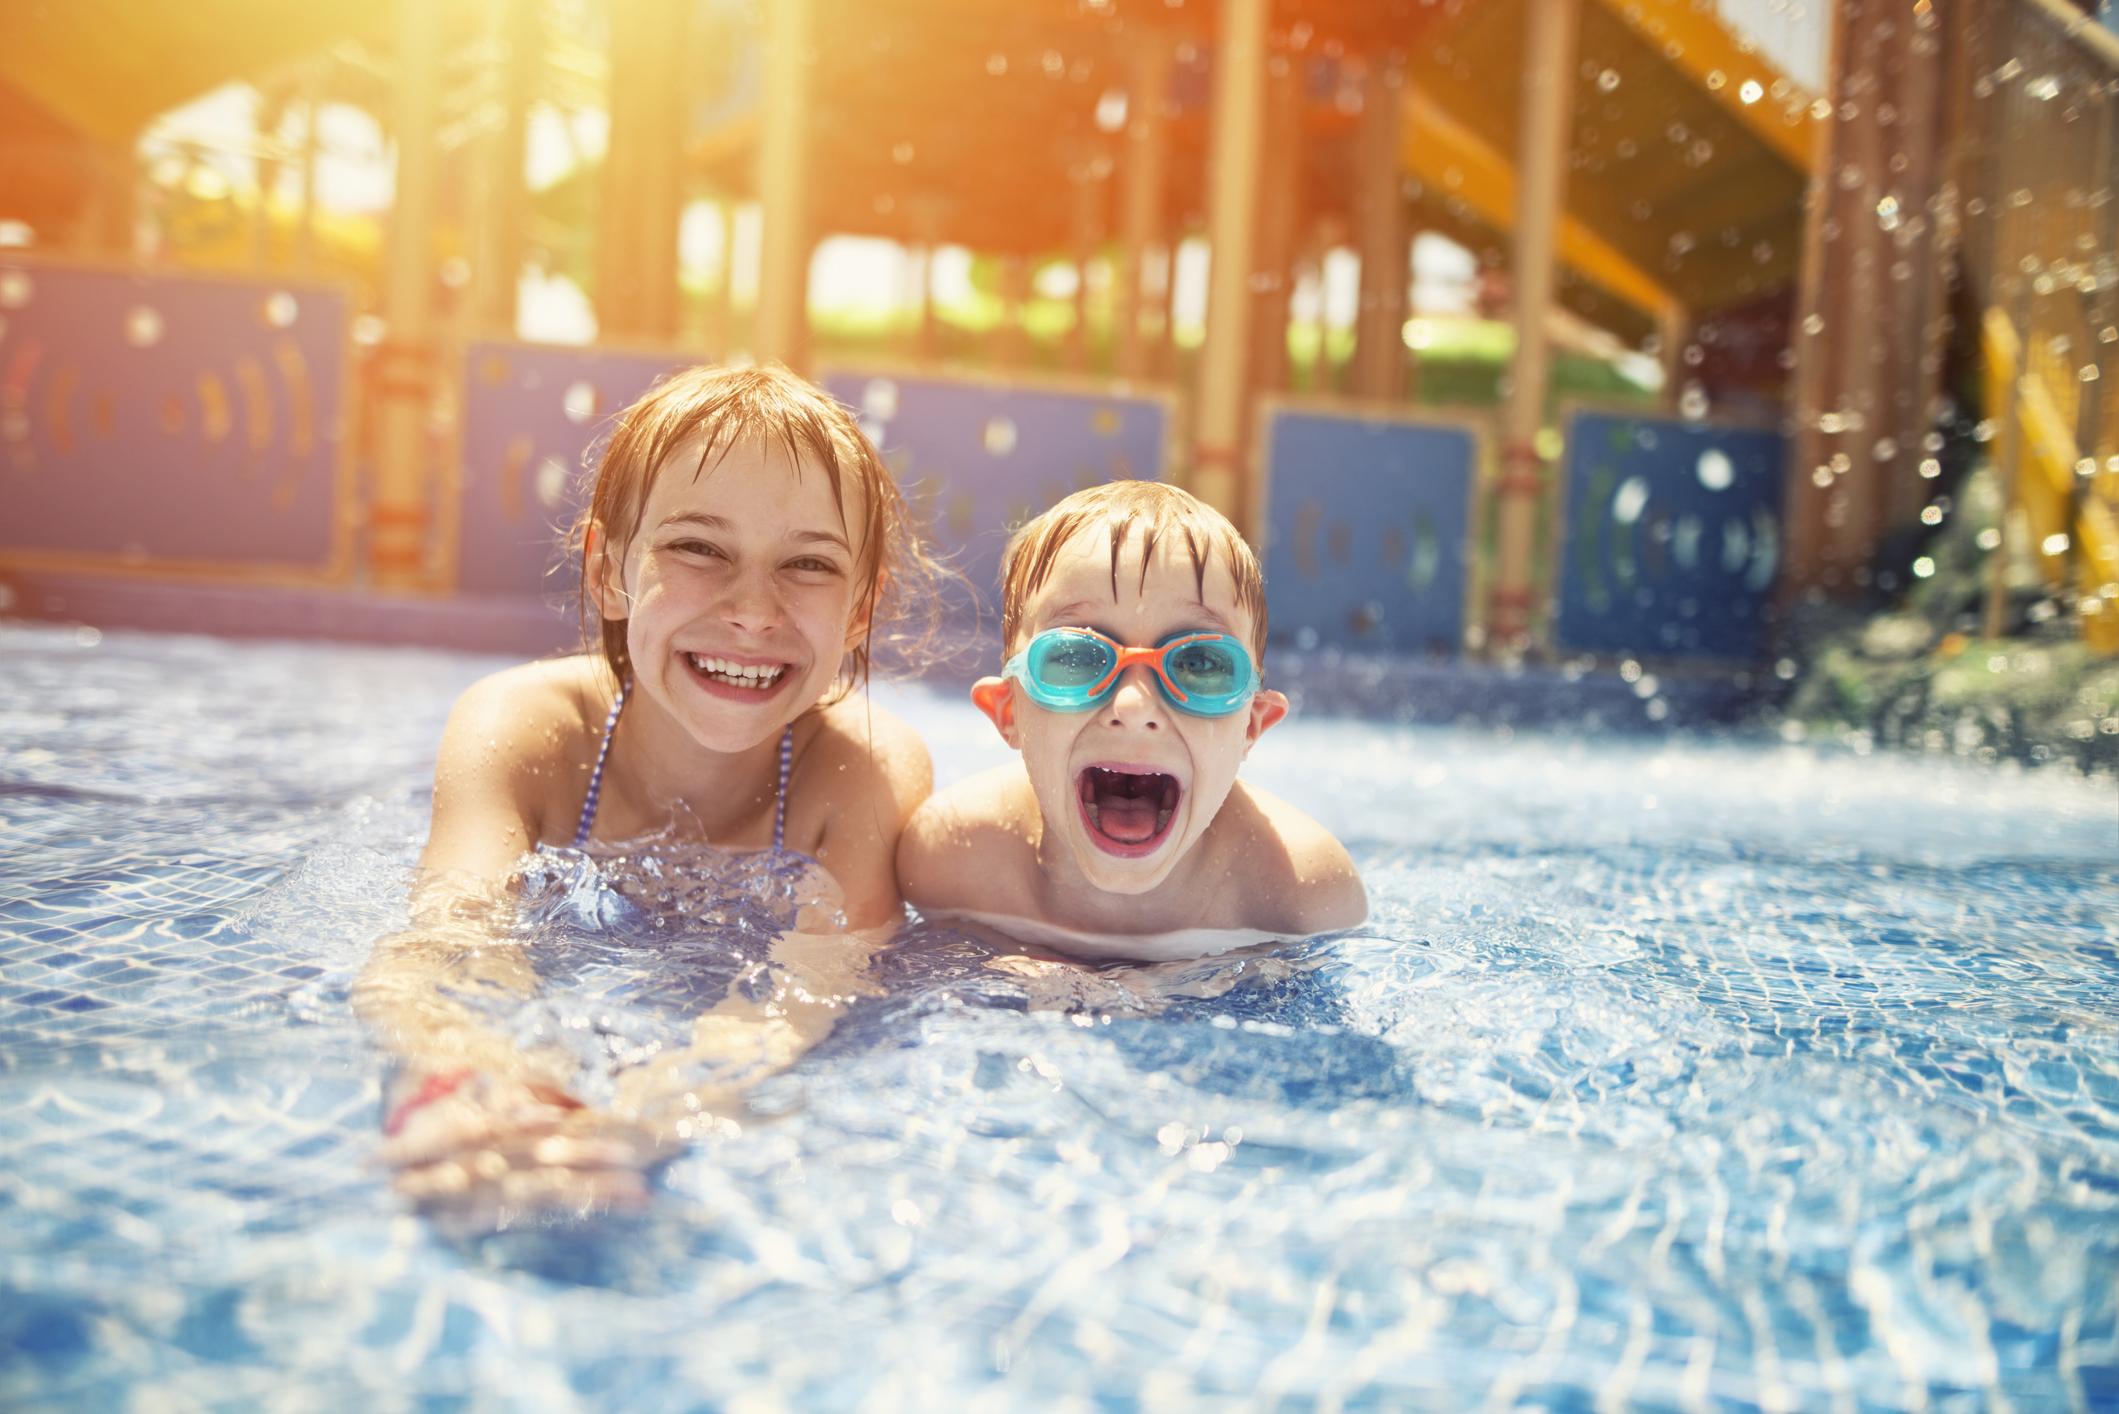 Para crianças um pouco mais crescidas, entre 6 e 11 anos, uma boa pedida de destino pode ser a de parques aquáticos e de diversão